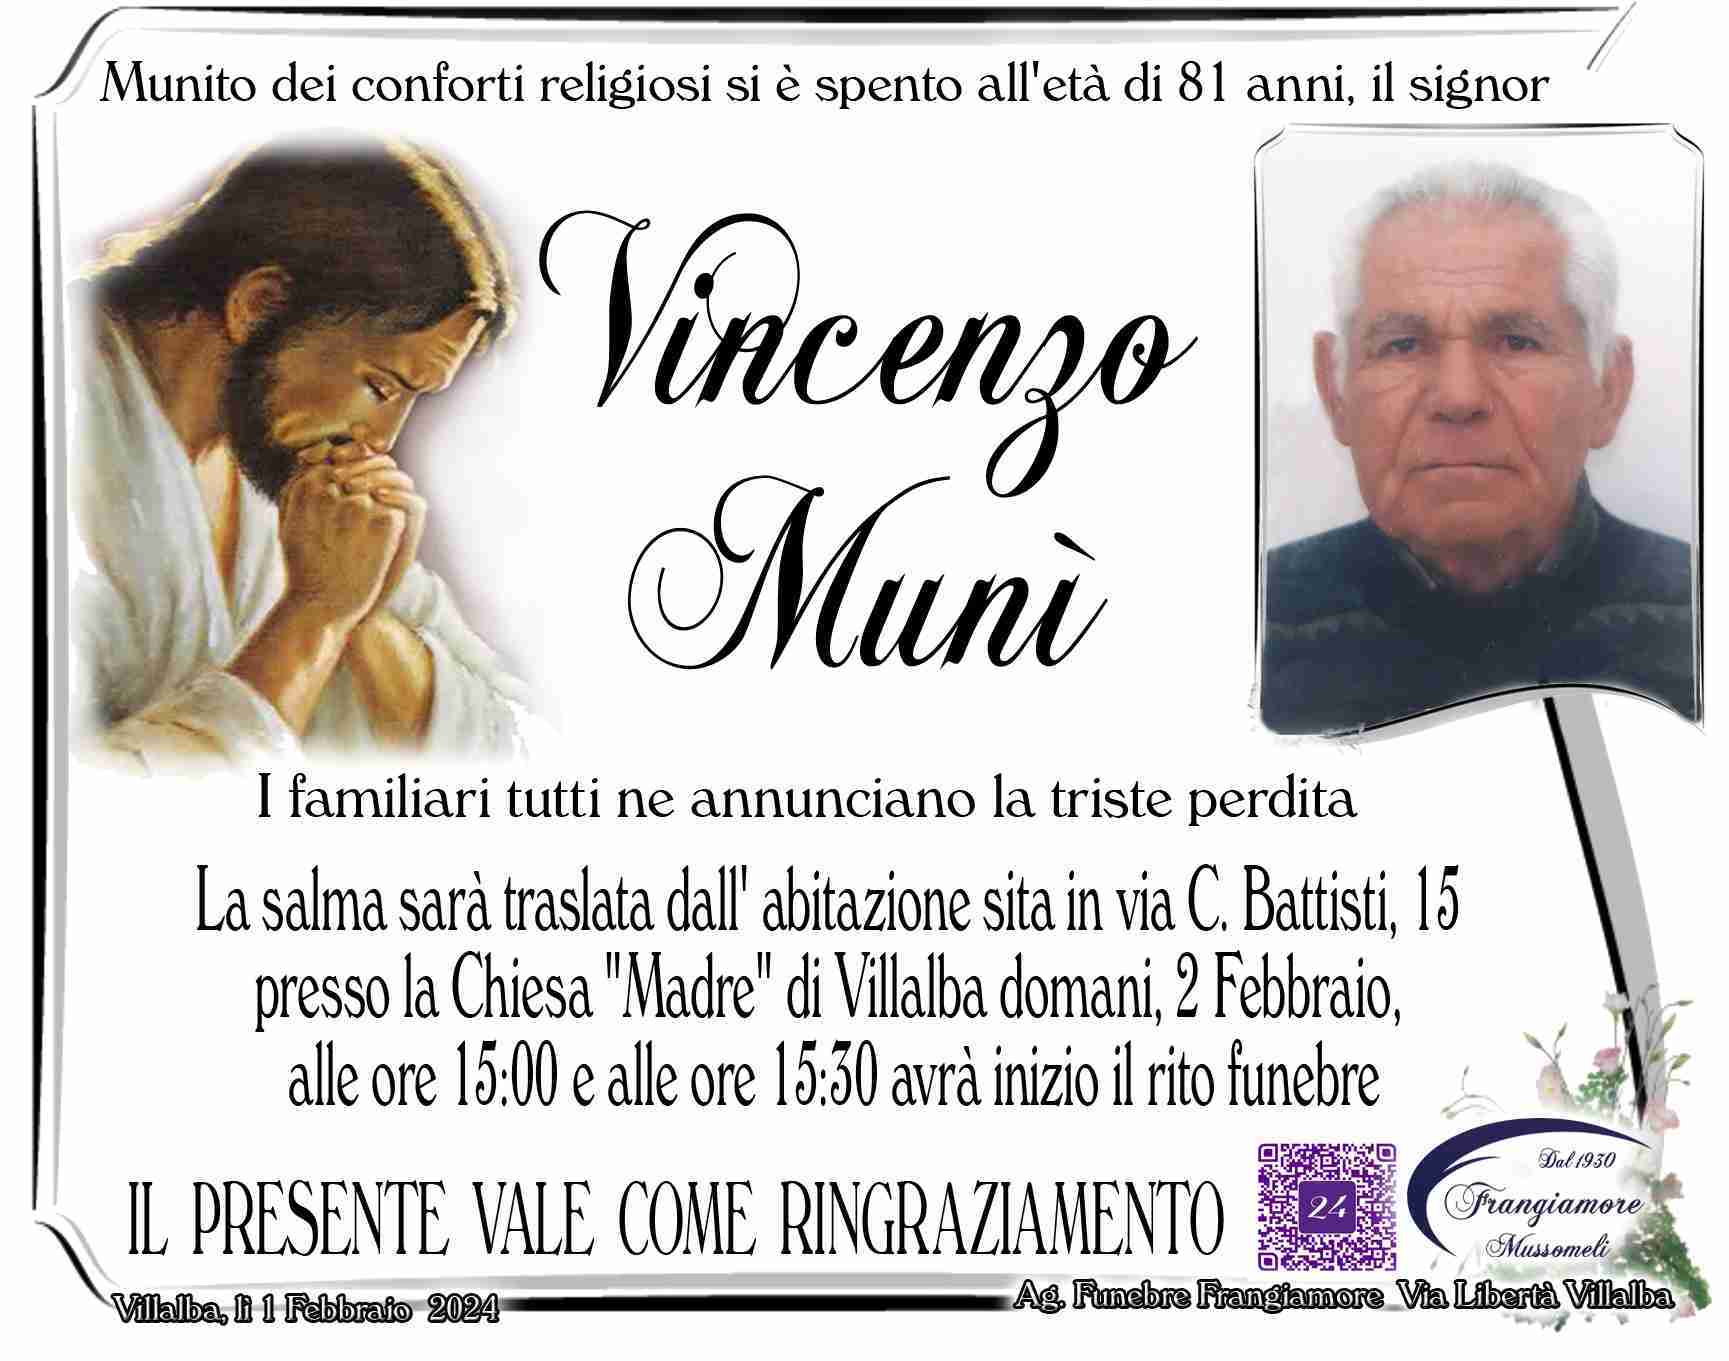 Vincenzo Munì